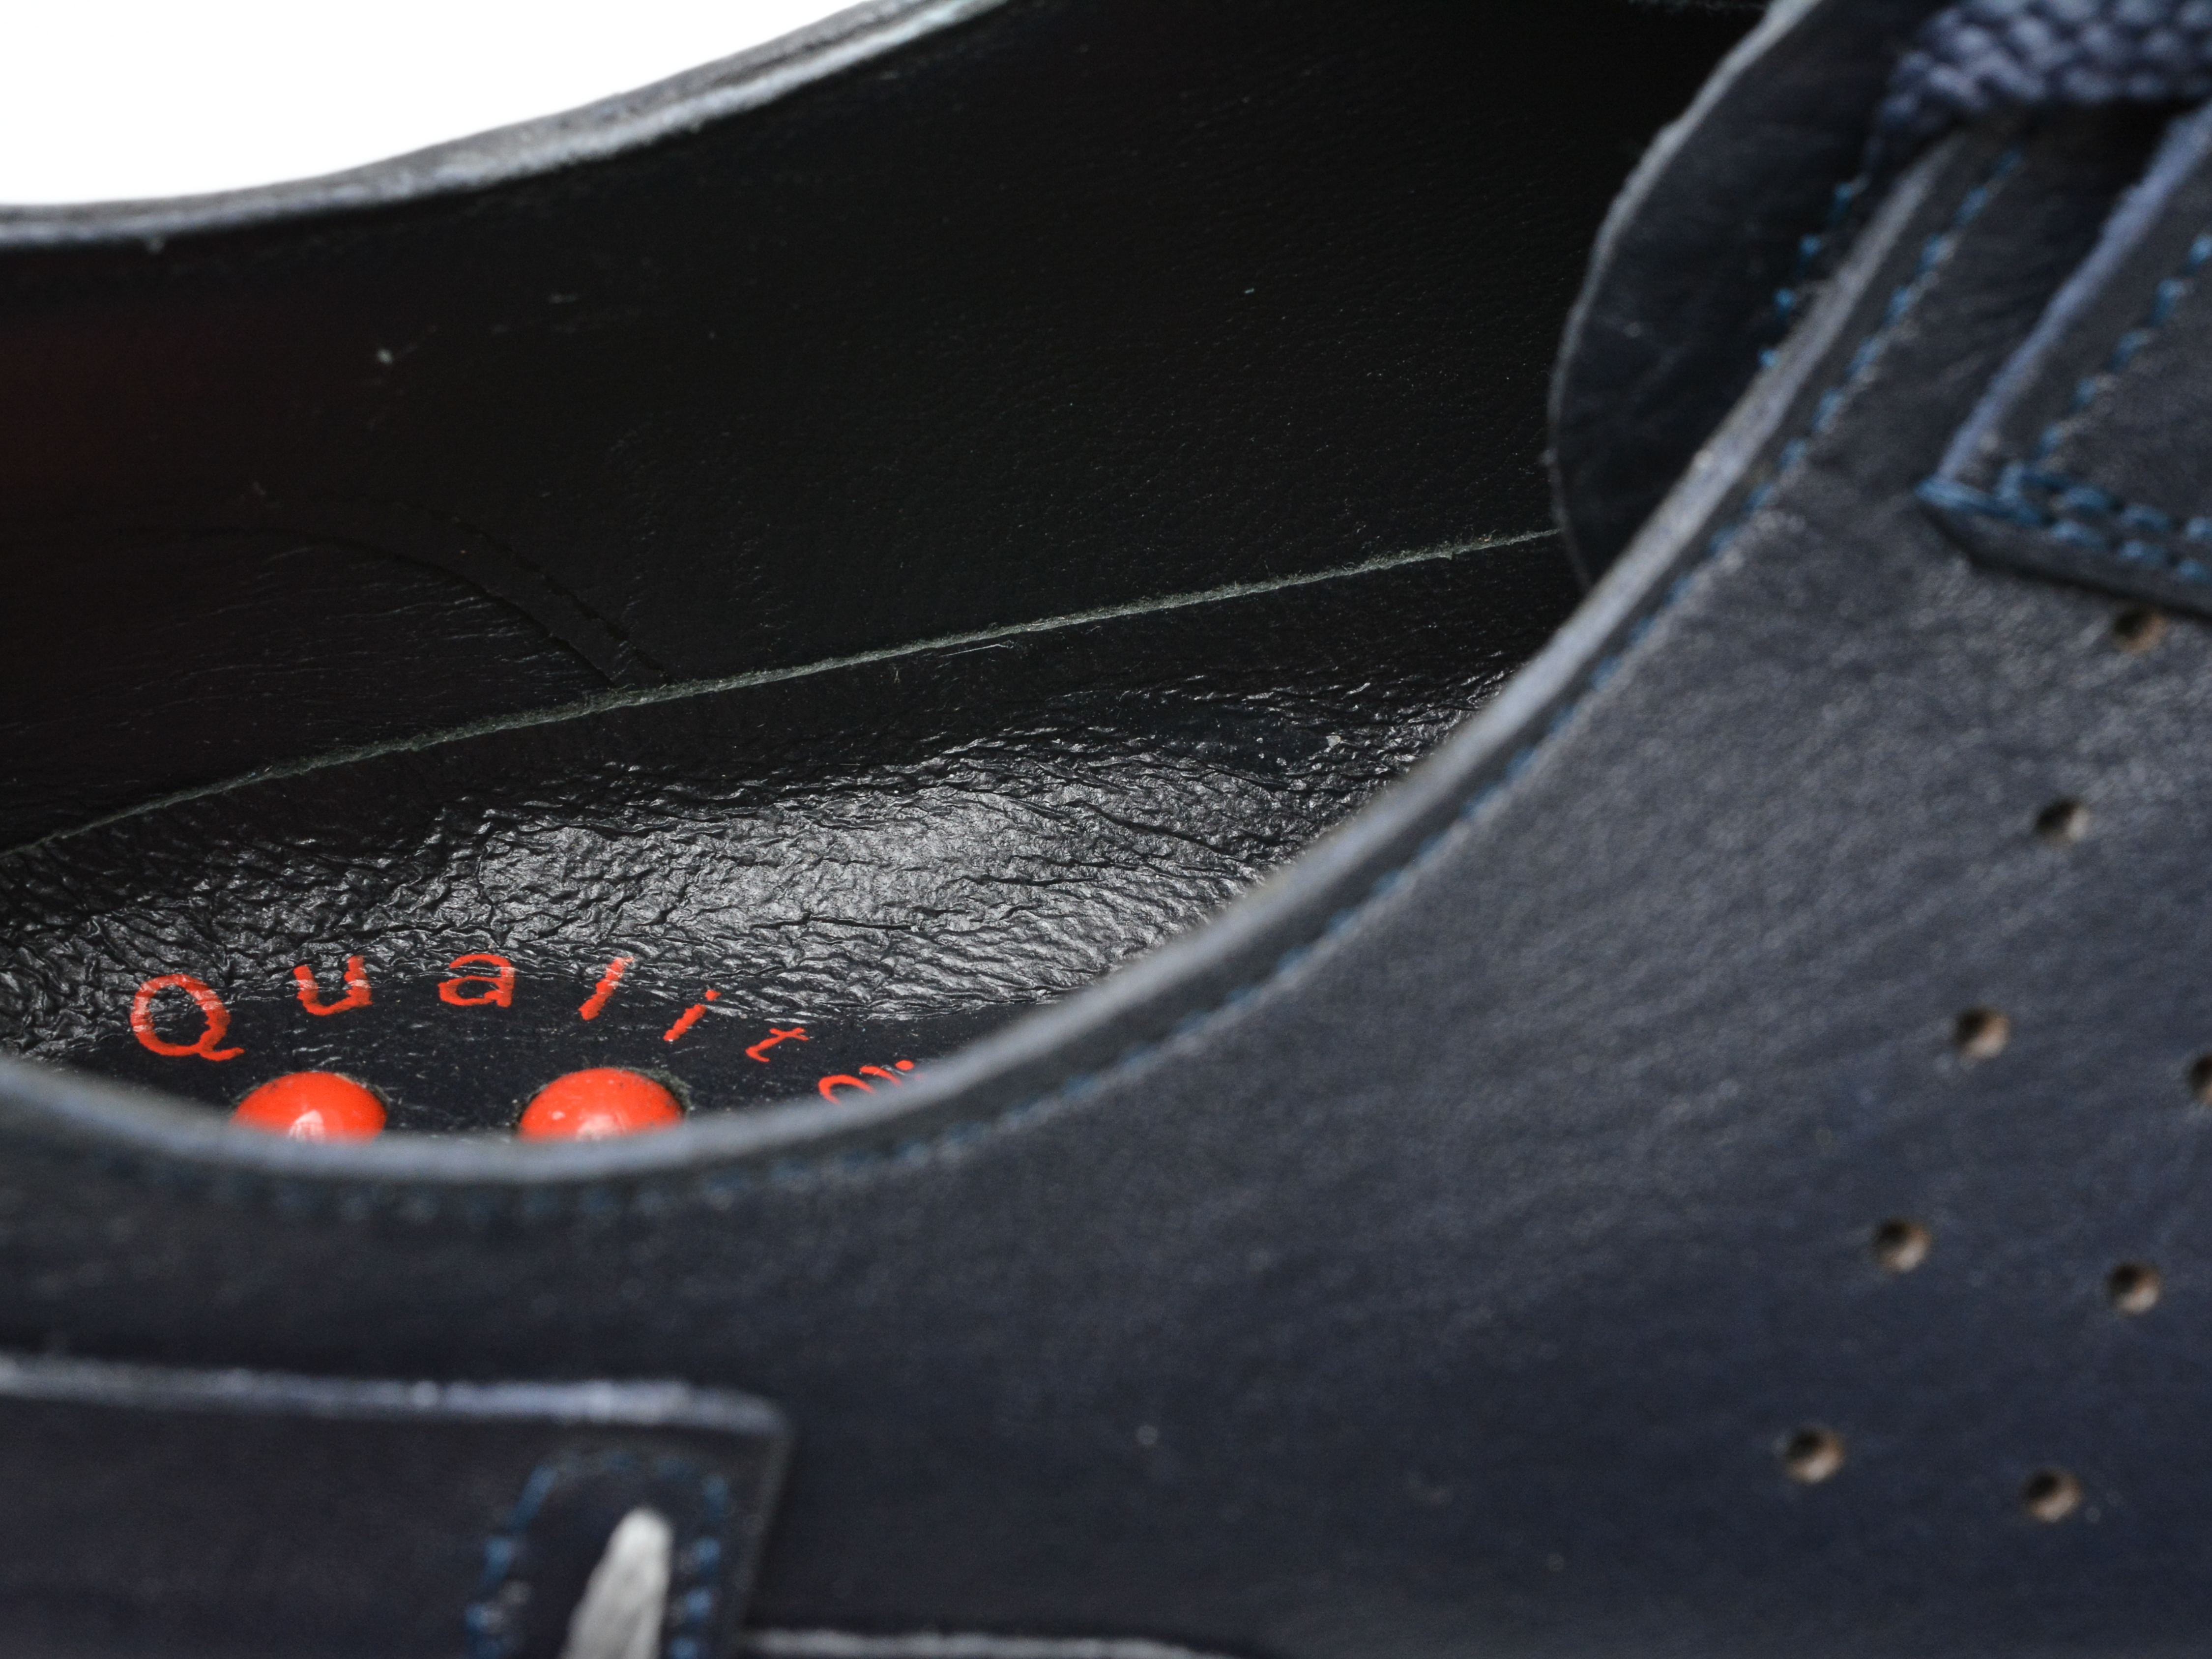 Poze Pantofi OTTER bleumarin, 2155196, din piele naturala Tezyo